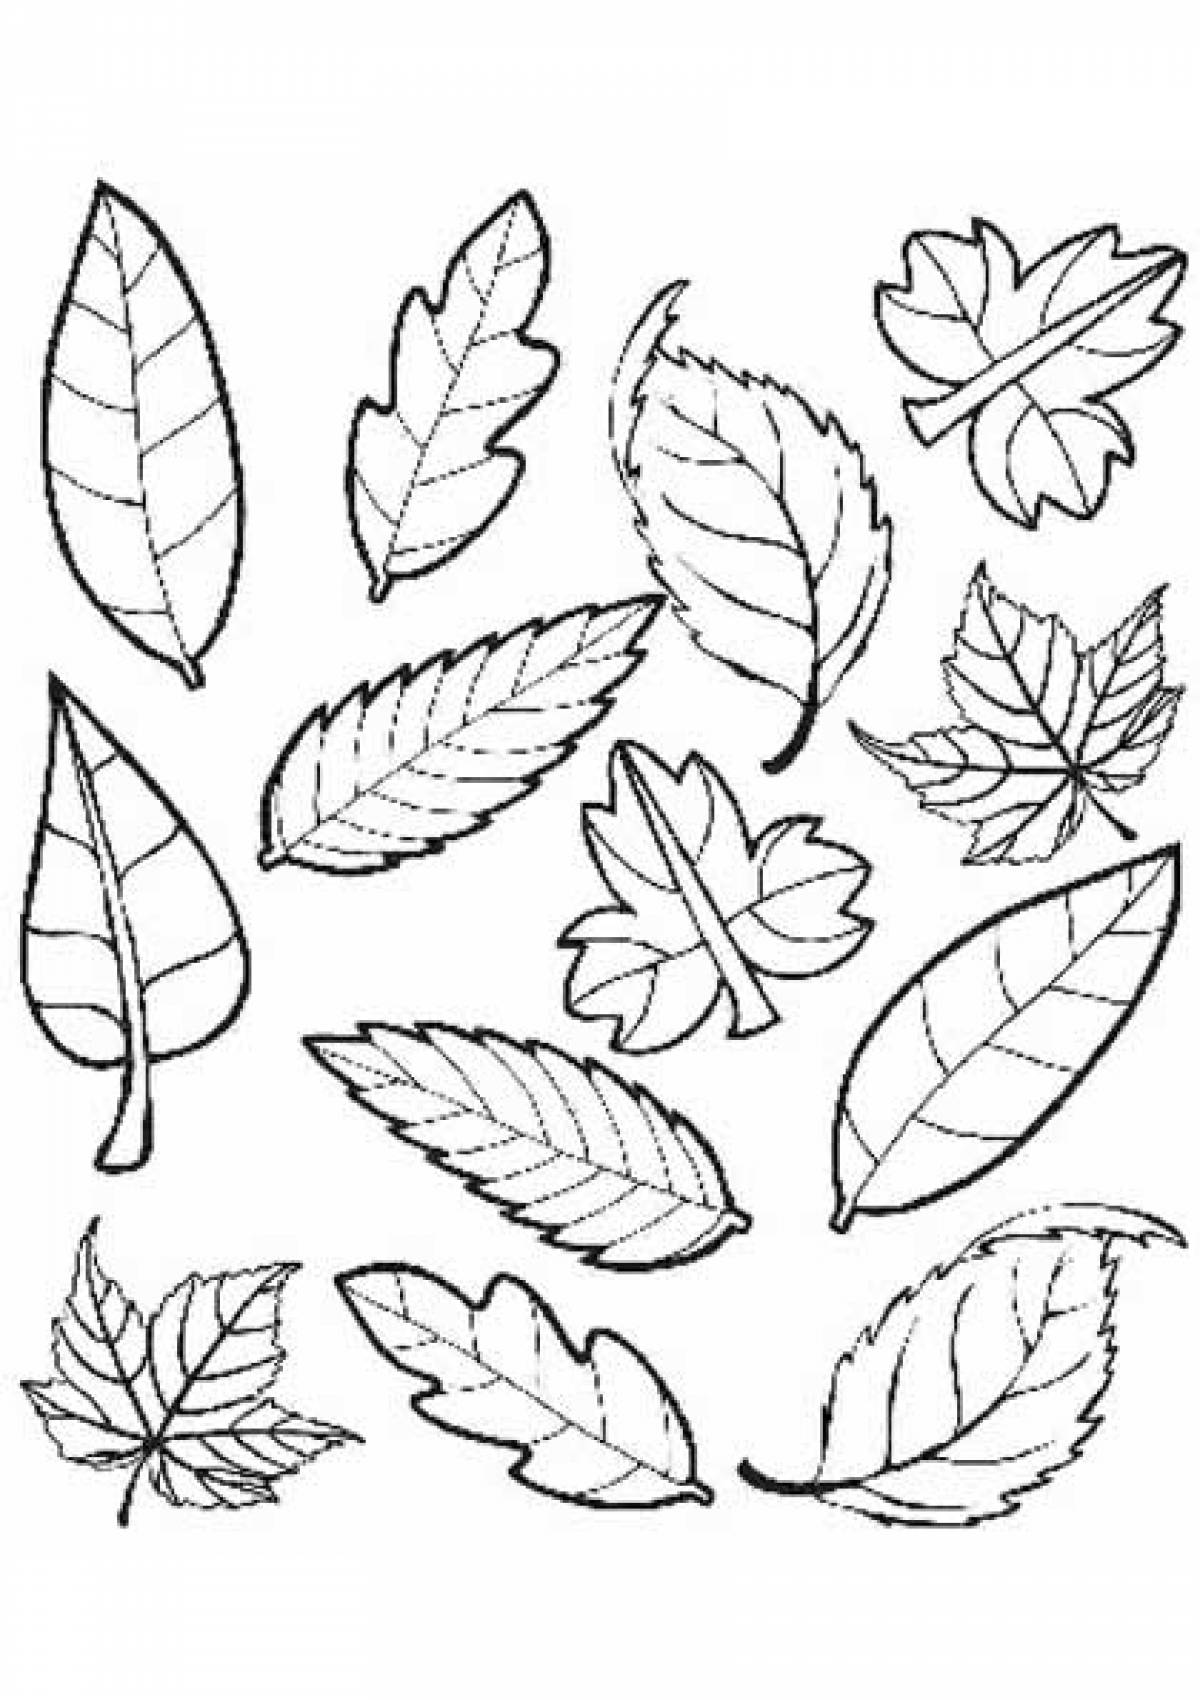 Бесплатные раскраски листья. Распечатать раскраски бесплатно и скачать раскраски онлайн.